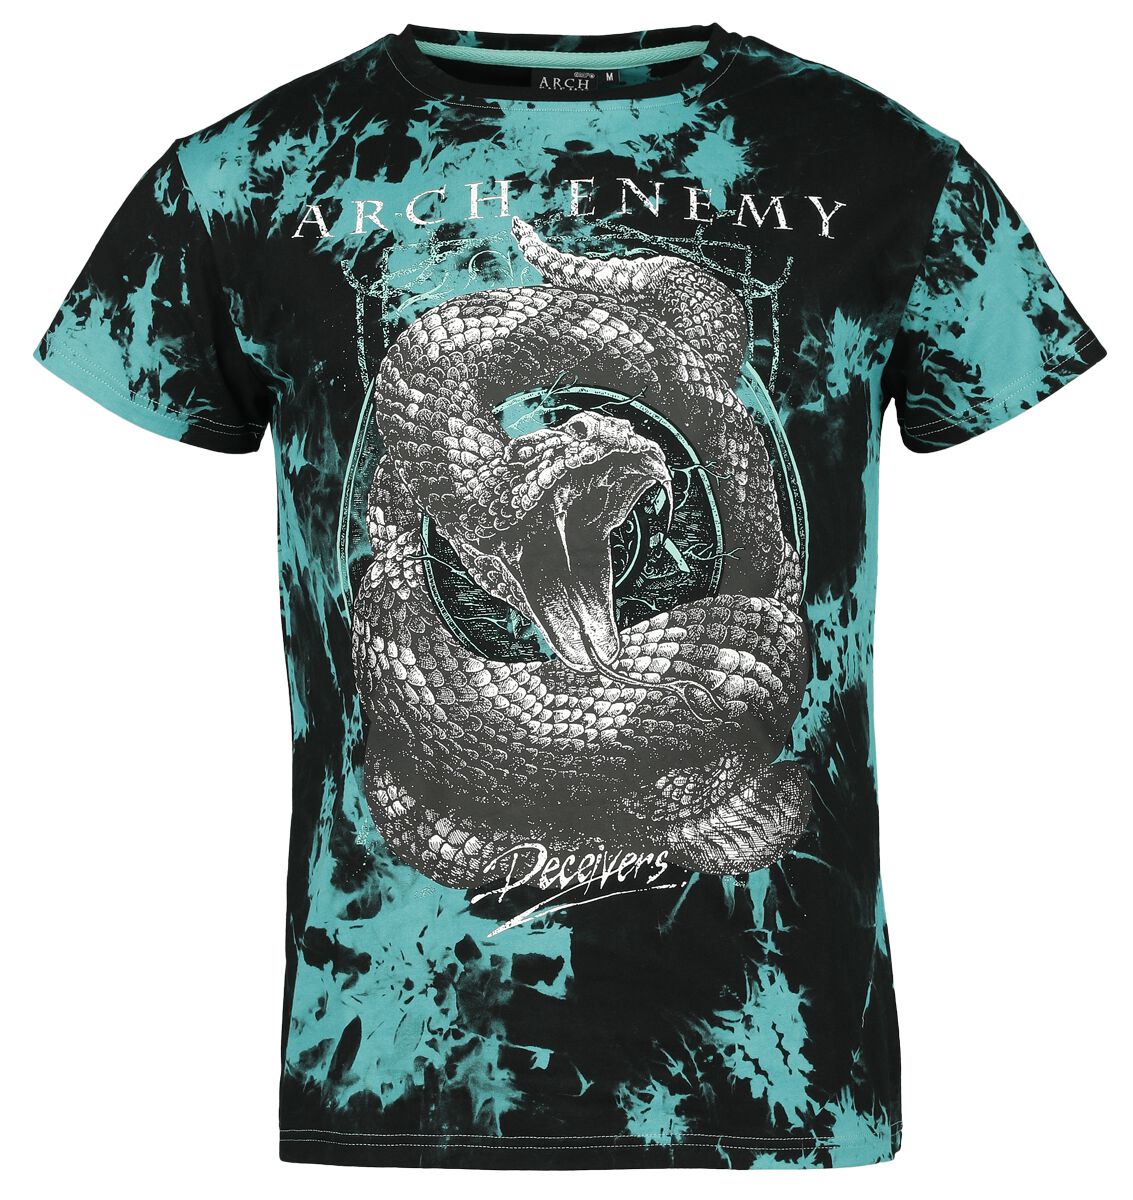 Arch Enemy T-Shirt - EMP Signature Collection - S bis 3XL - für Männer - Größe S - schwarz/türkis  - EMP exklusives Merchandise!